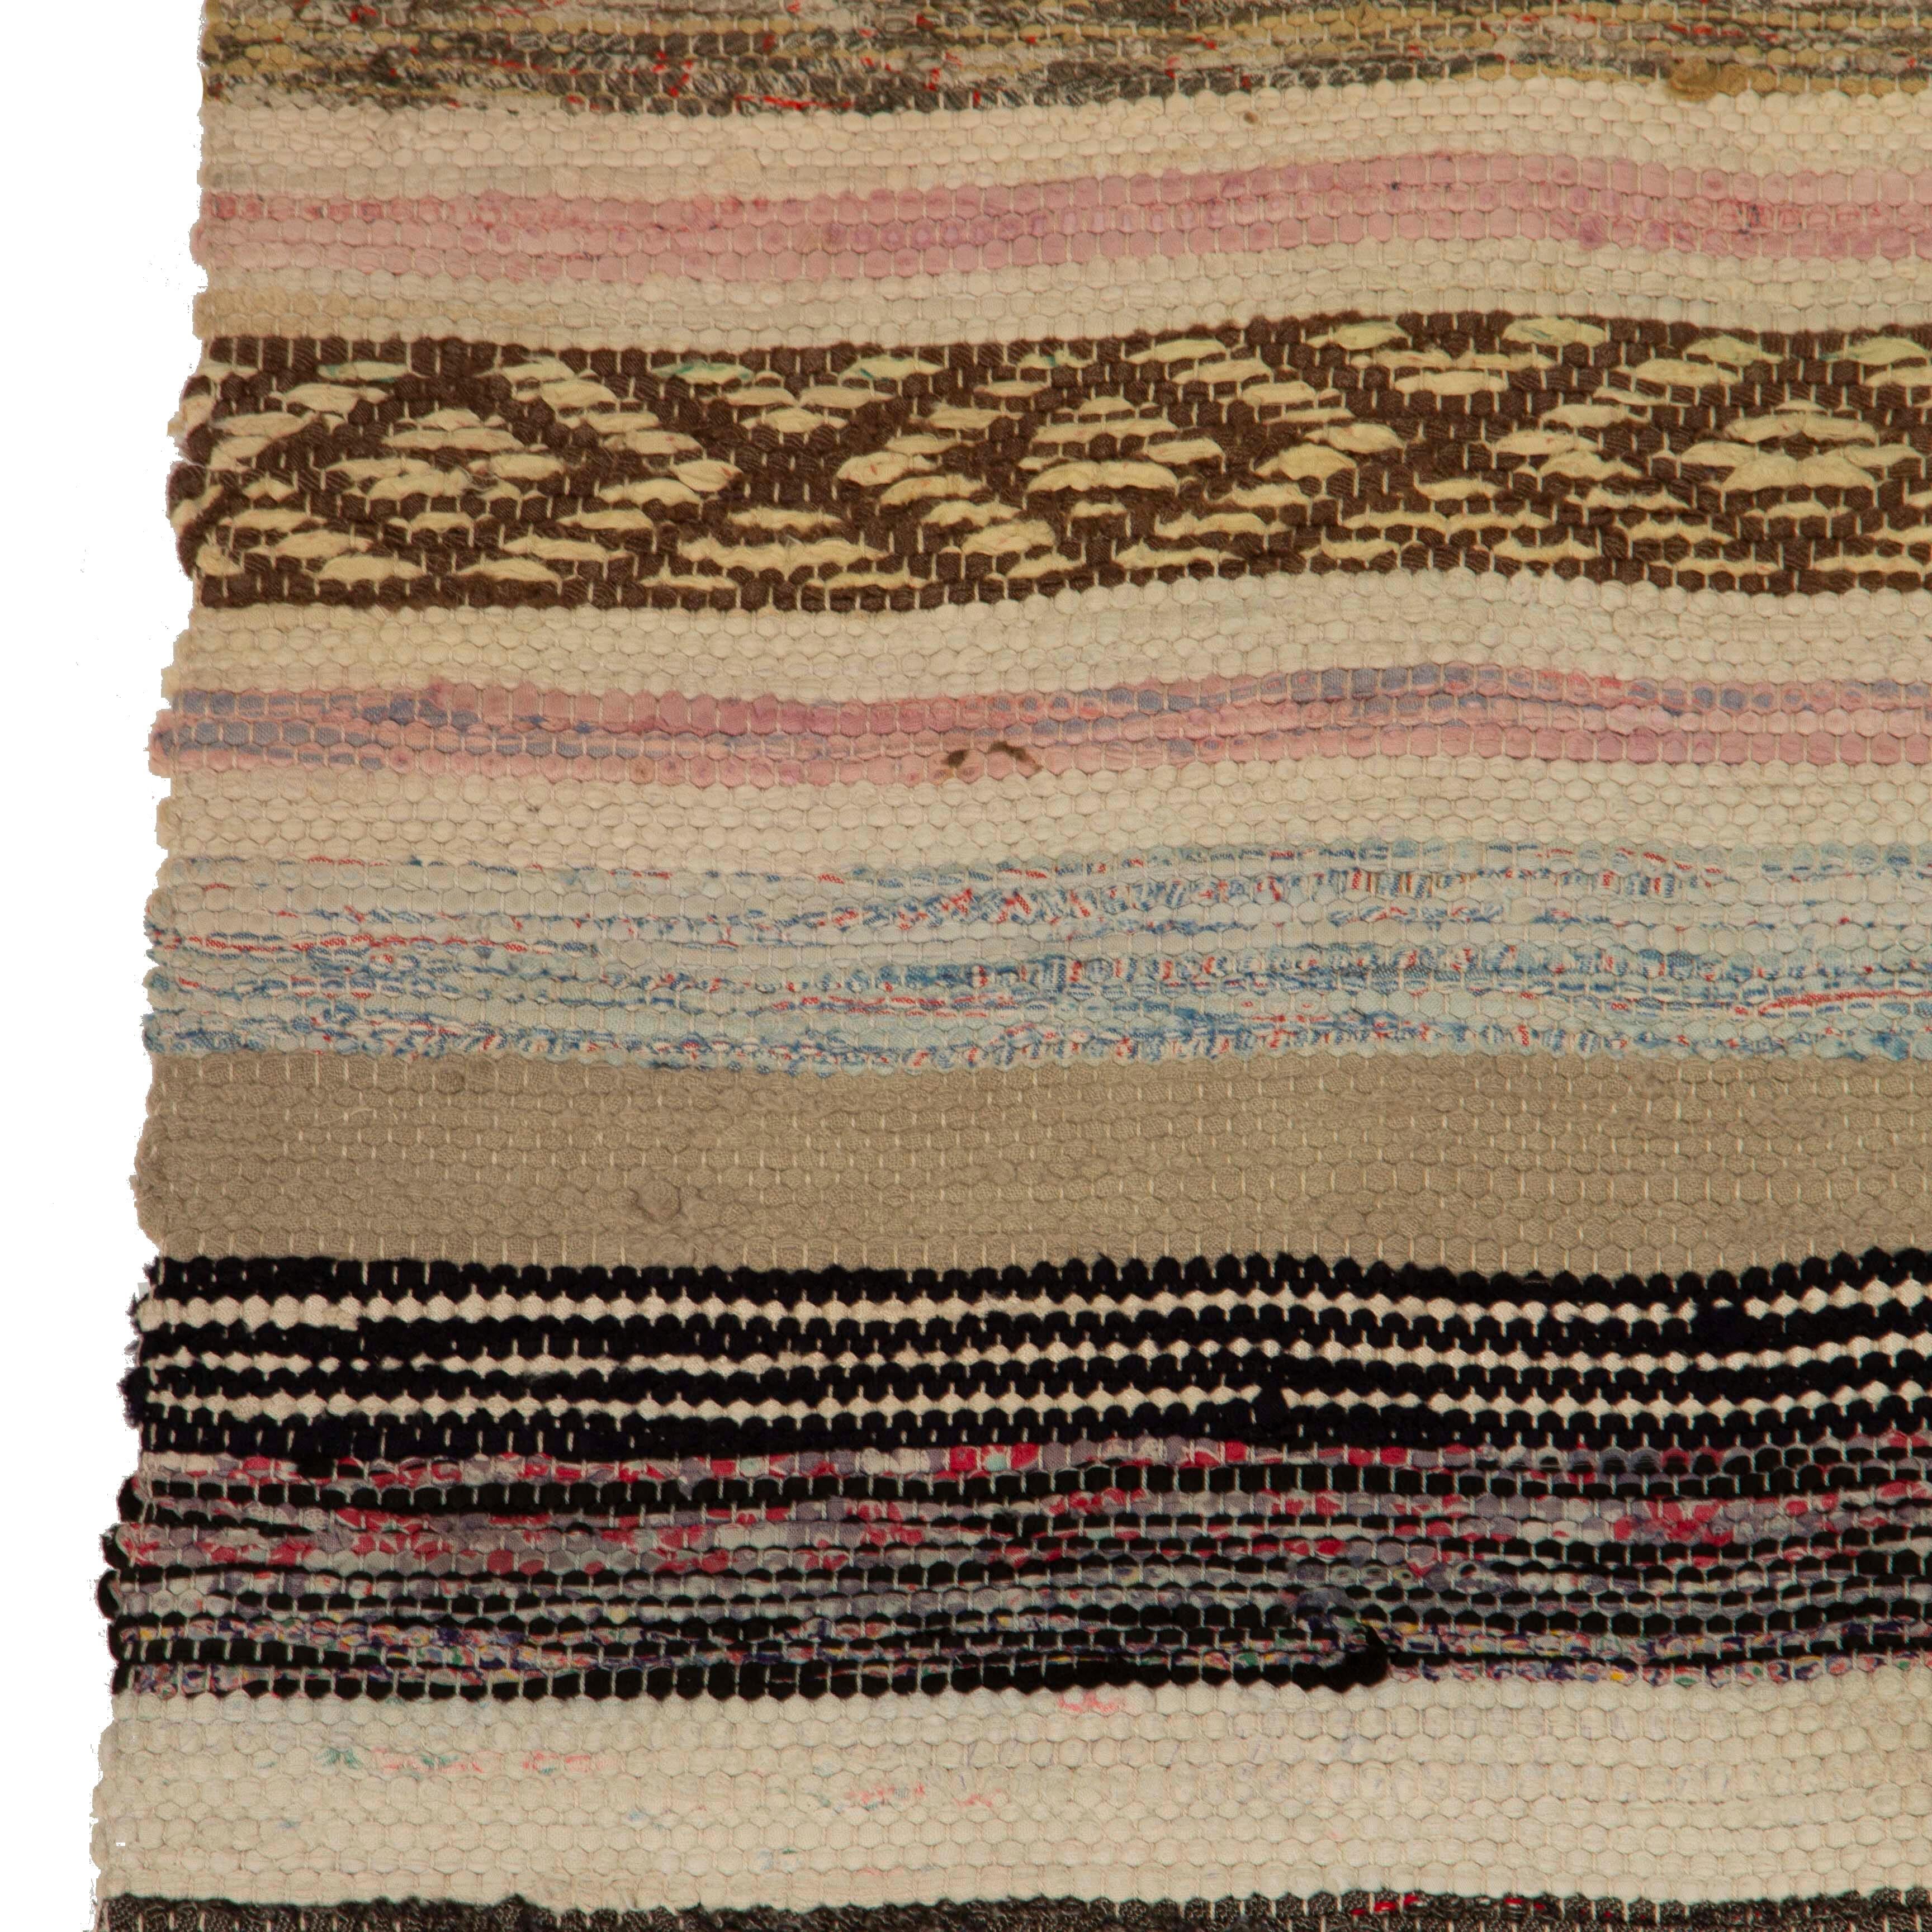 Schwedischer handgewebter Teppich, ca. 1940-50.   Dieser Teppich hat eine lange und dünne Form, ideal für die Verwendung als Läufer.  Es zeichnet sich durch ein dichtes Streifendesign in attraktiven Blau-, Schwarz- und Hellgrüntönen aus.   Waschbar